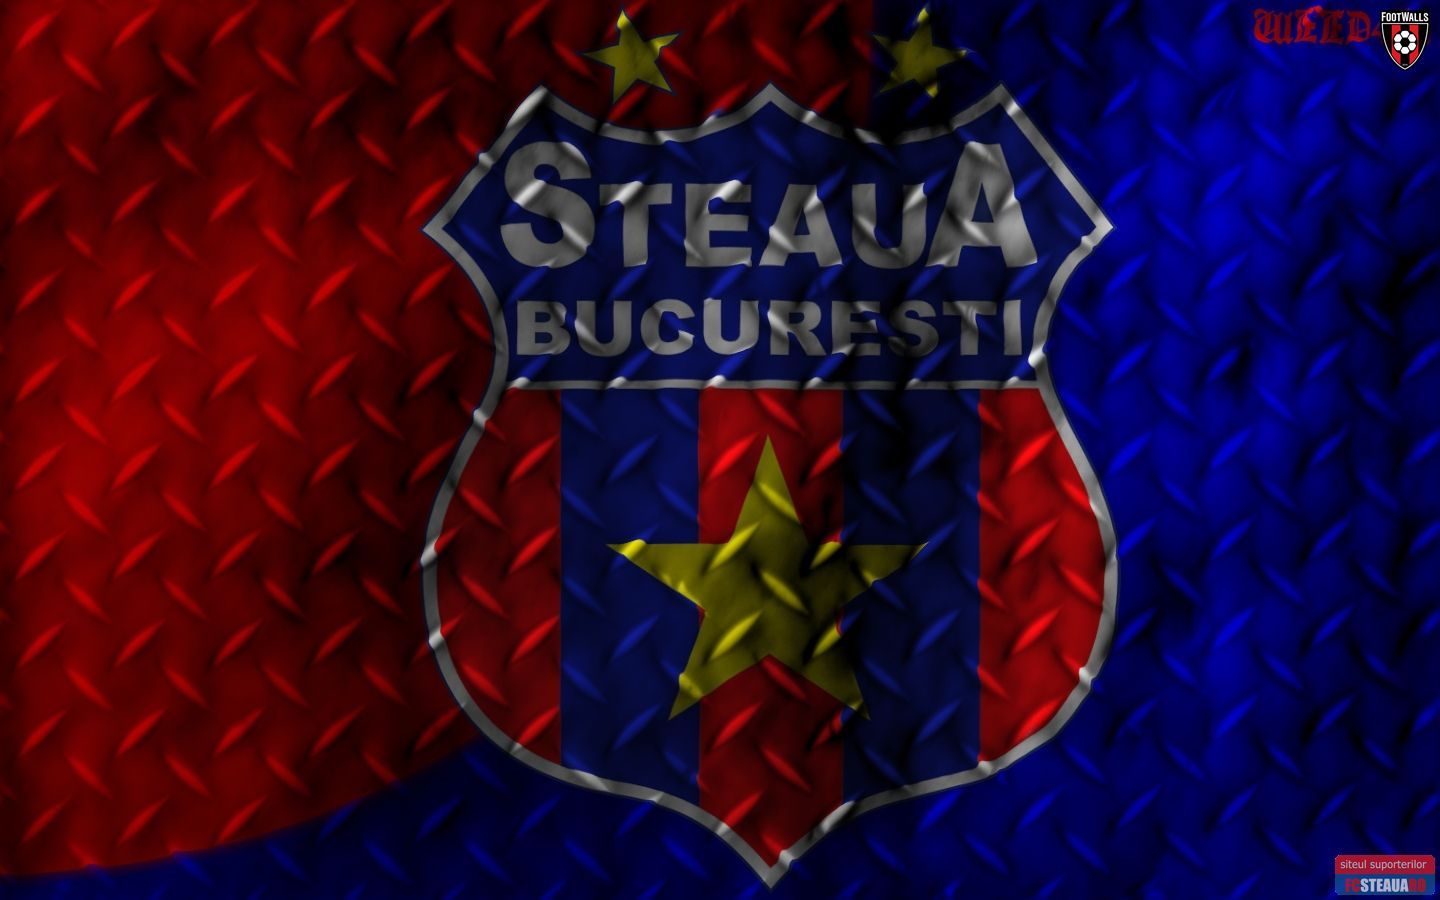 Steaua Wallpaper